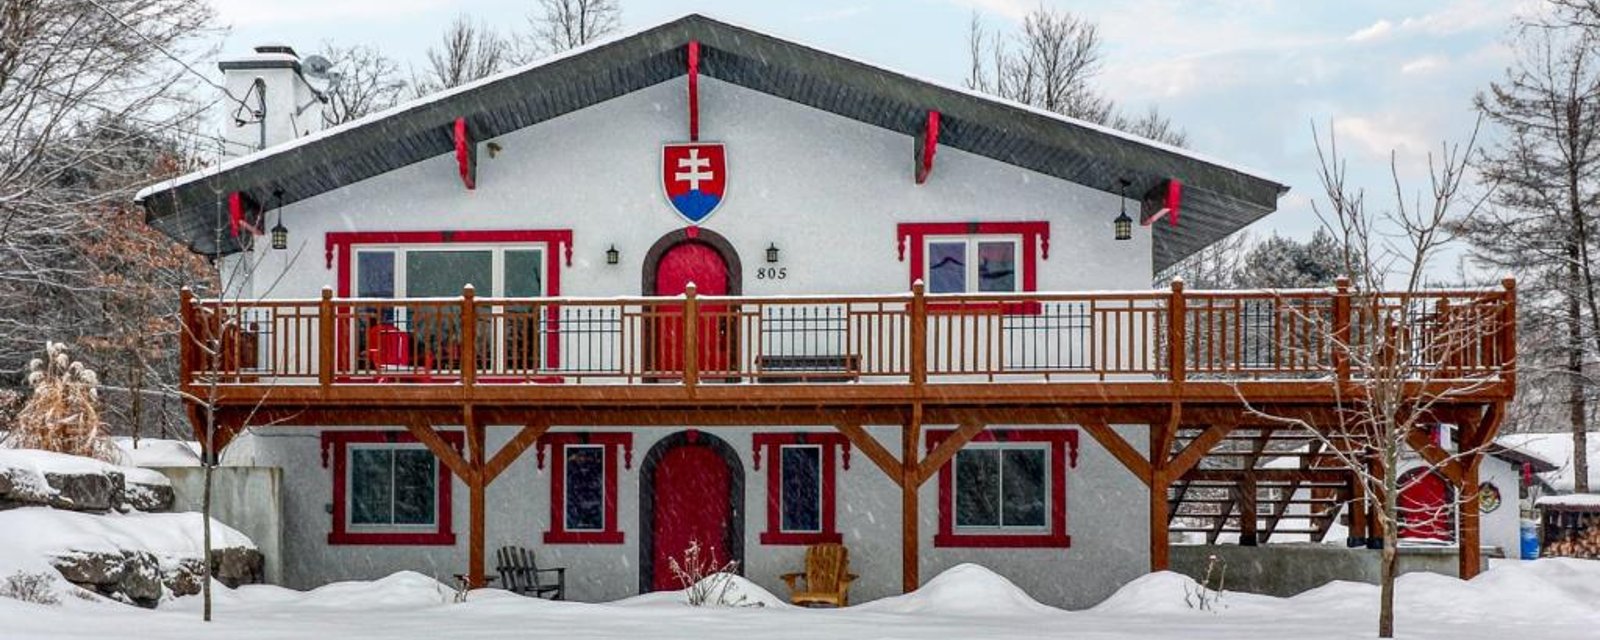 Coup de coeur assuré! Épatante maison-chalet suisse de 4 chambres située près de tous les attraits de Sainte-Adèle